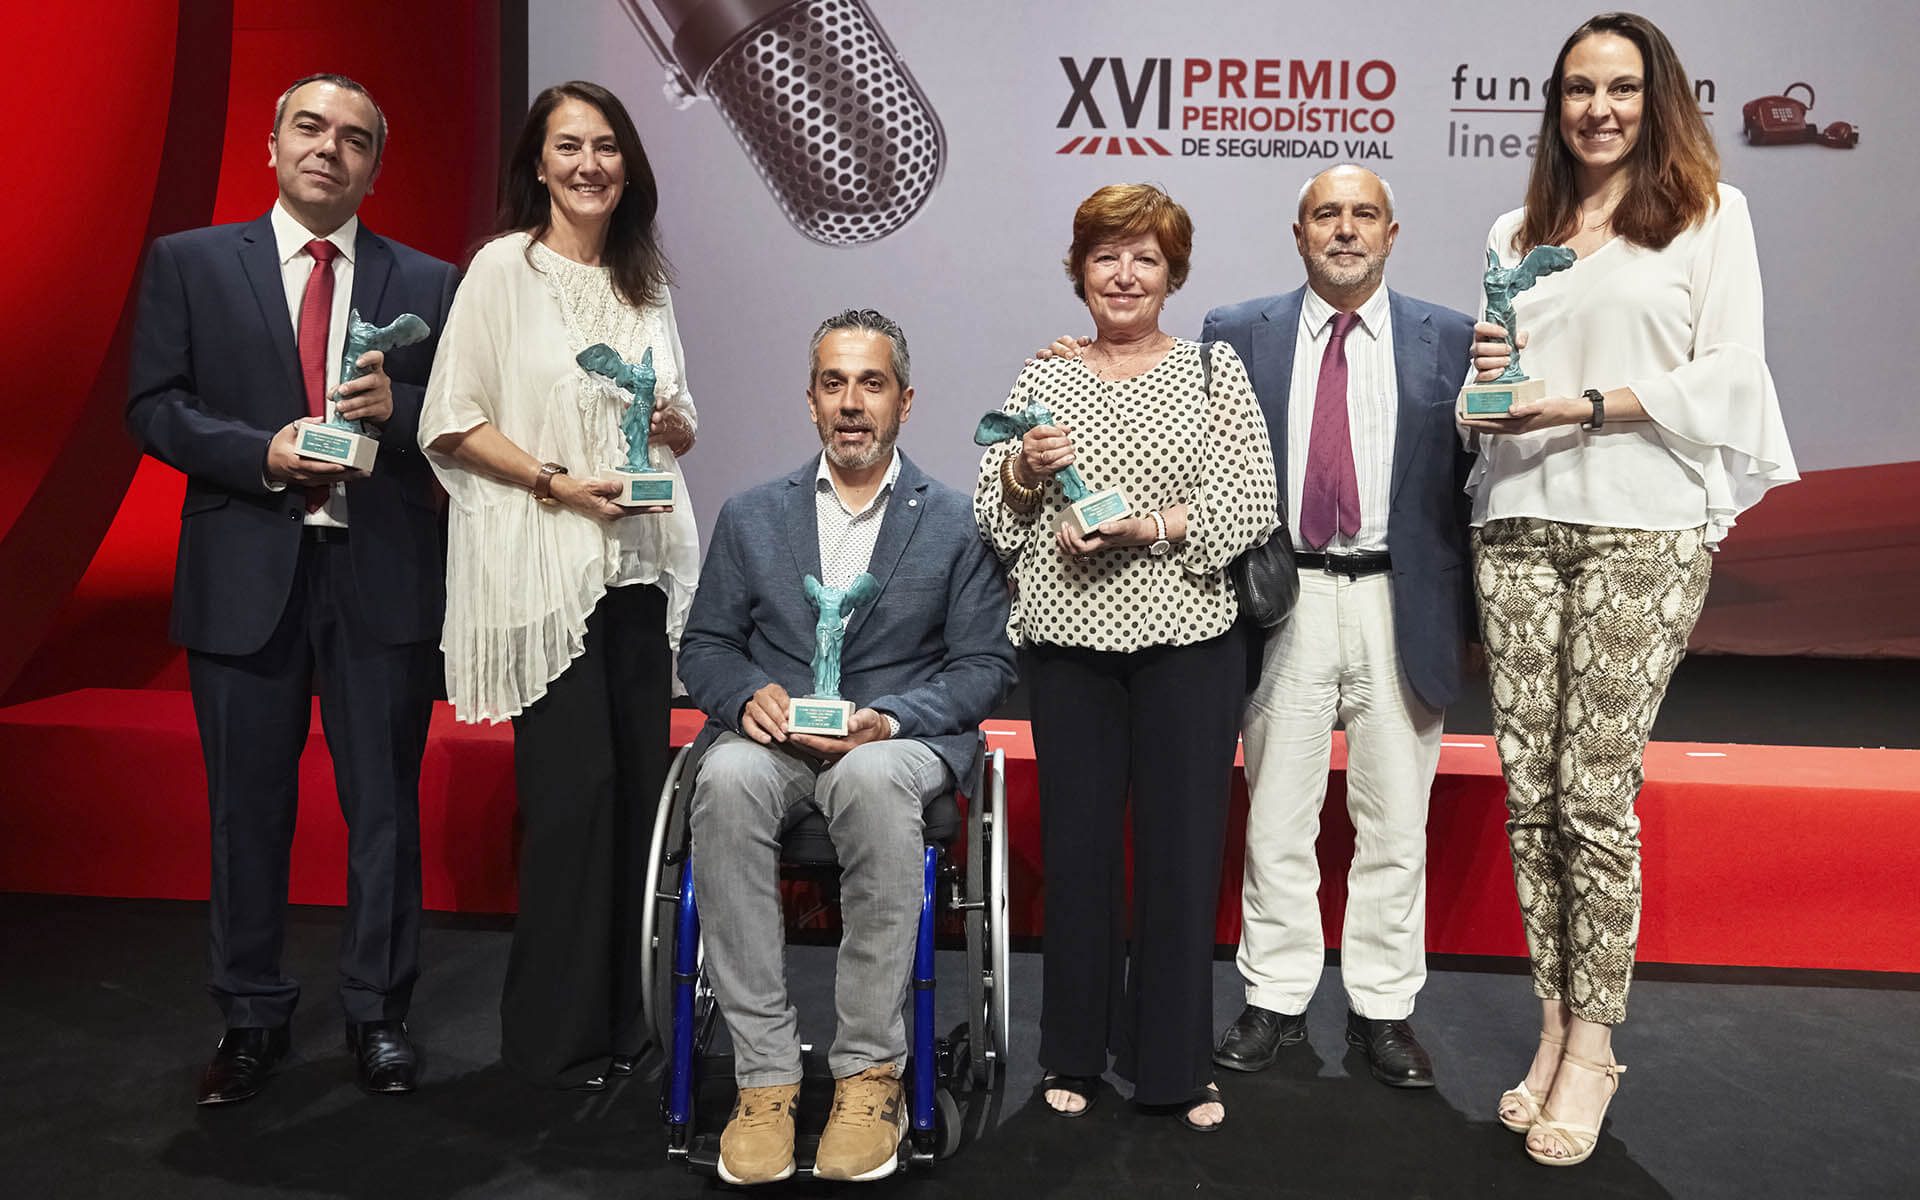 XVI Premio Periodístico de la Fundación Línea Directa